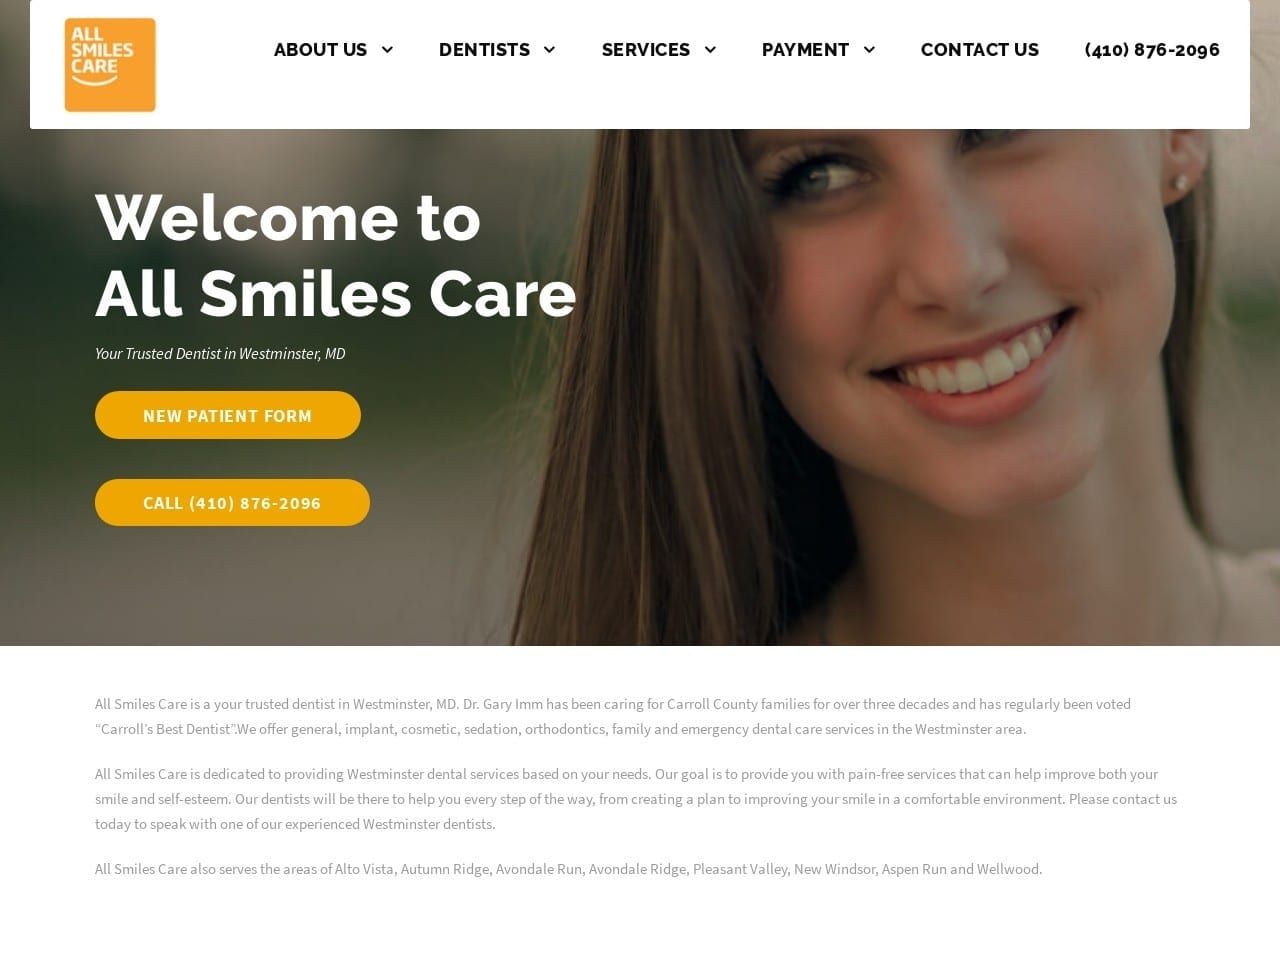 All Smiles Care Website Screenshot from allsmilescare.com